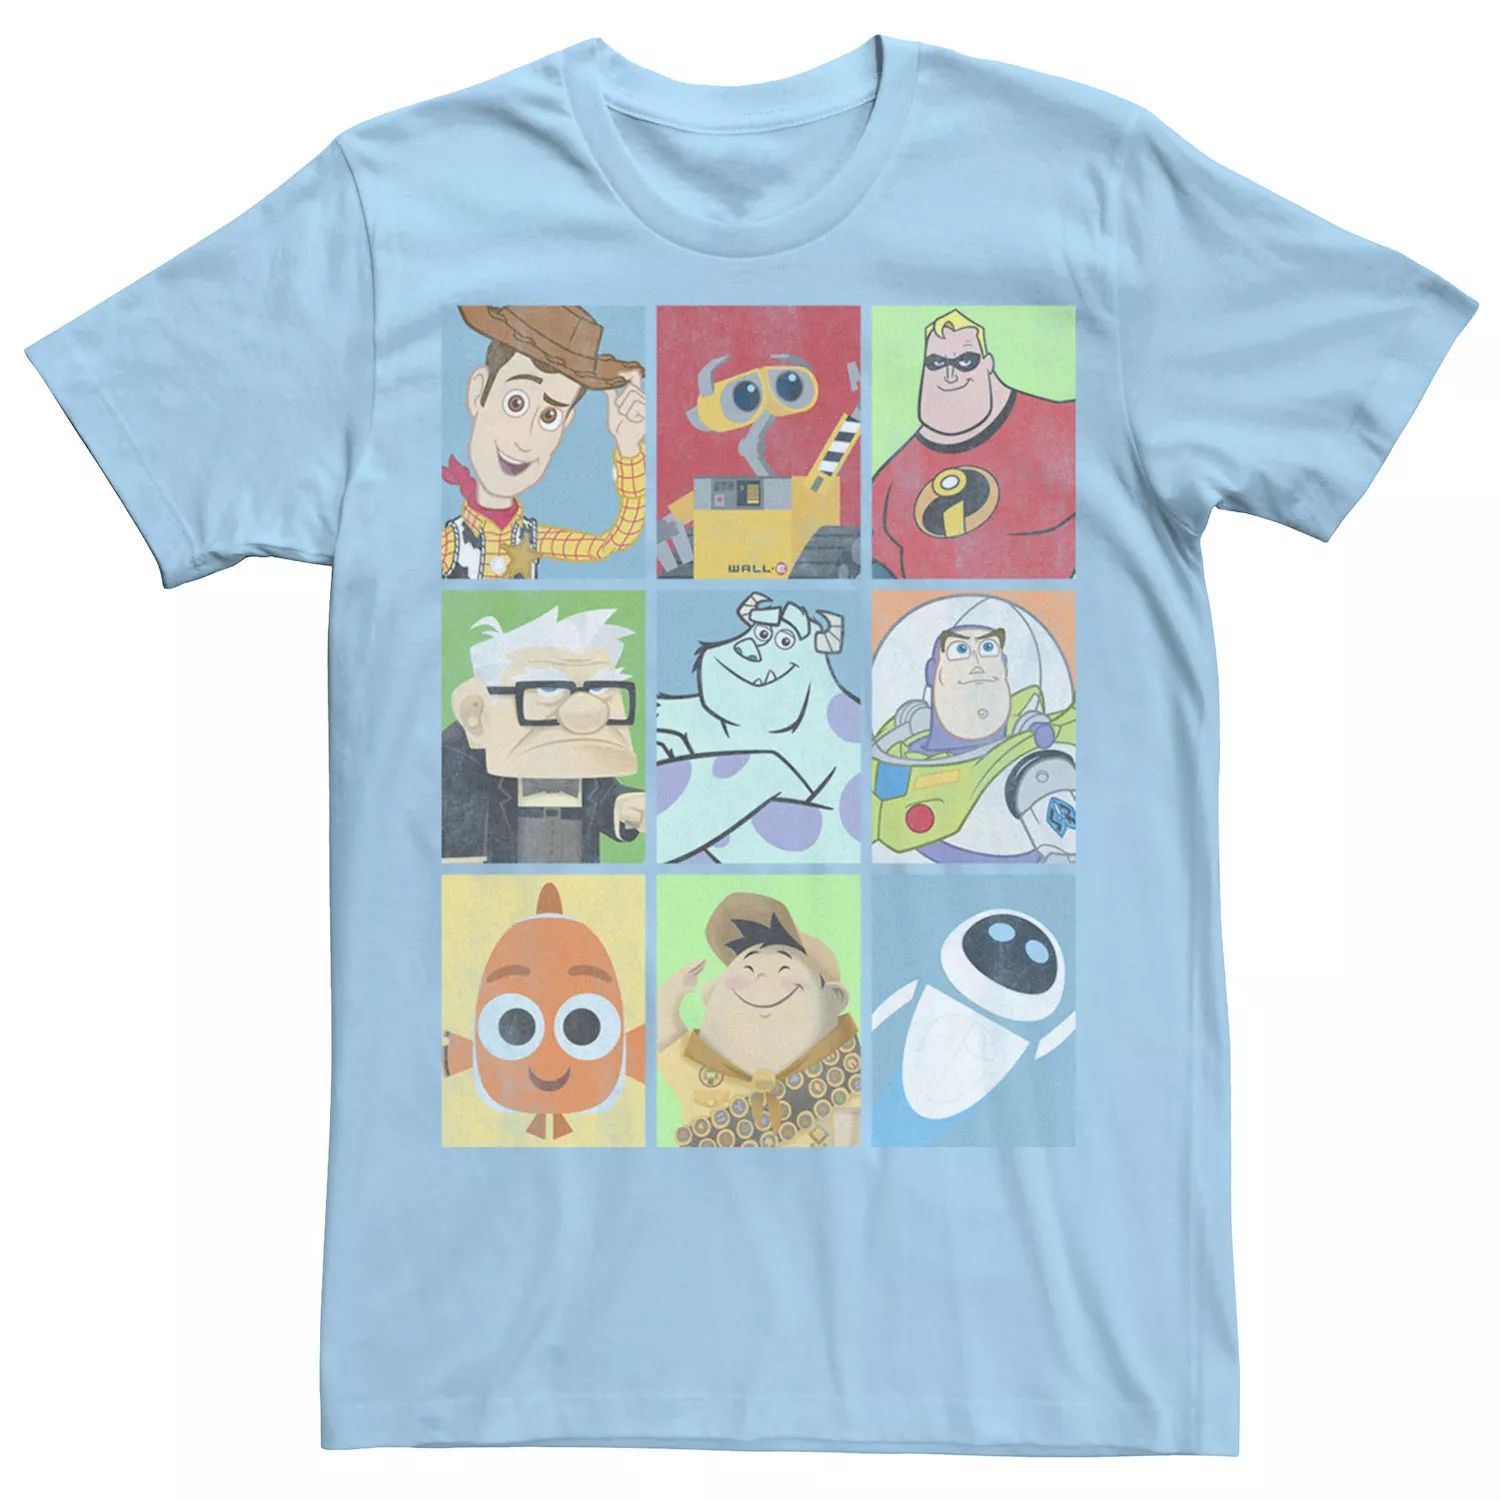 Мужская футболка с персонажем Disney/Pixar Epic Boxed Up Line Up Disney / Pixar, светло-синий